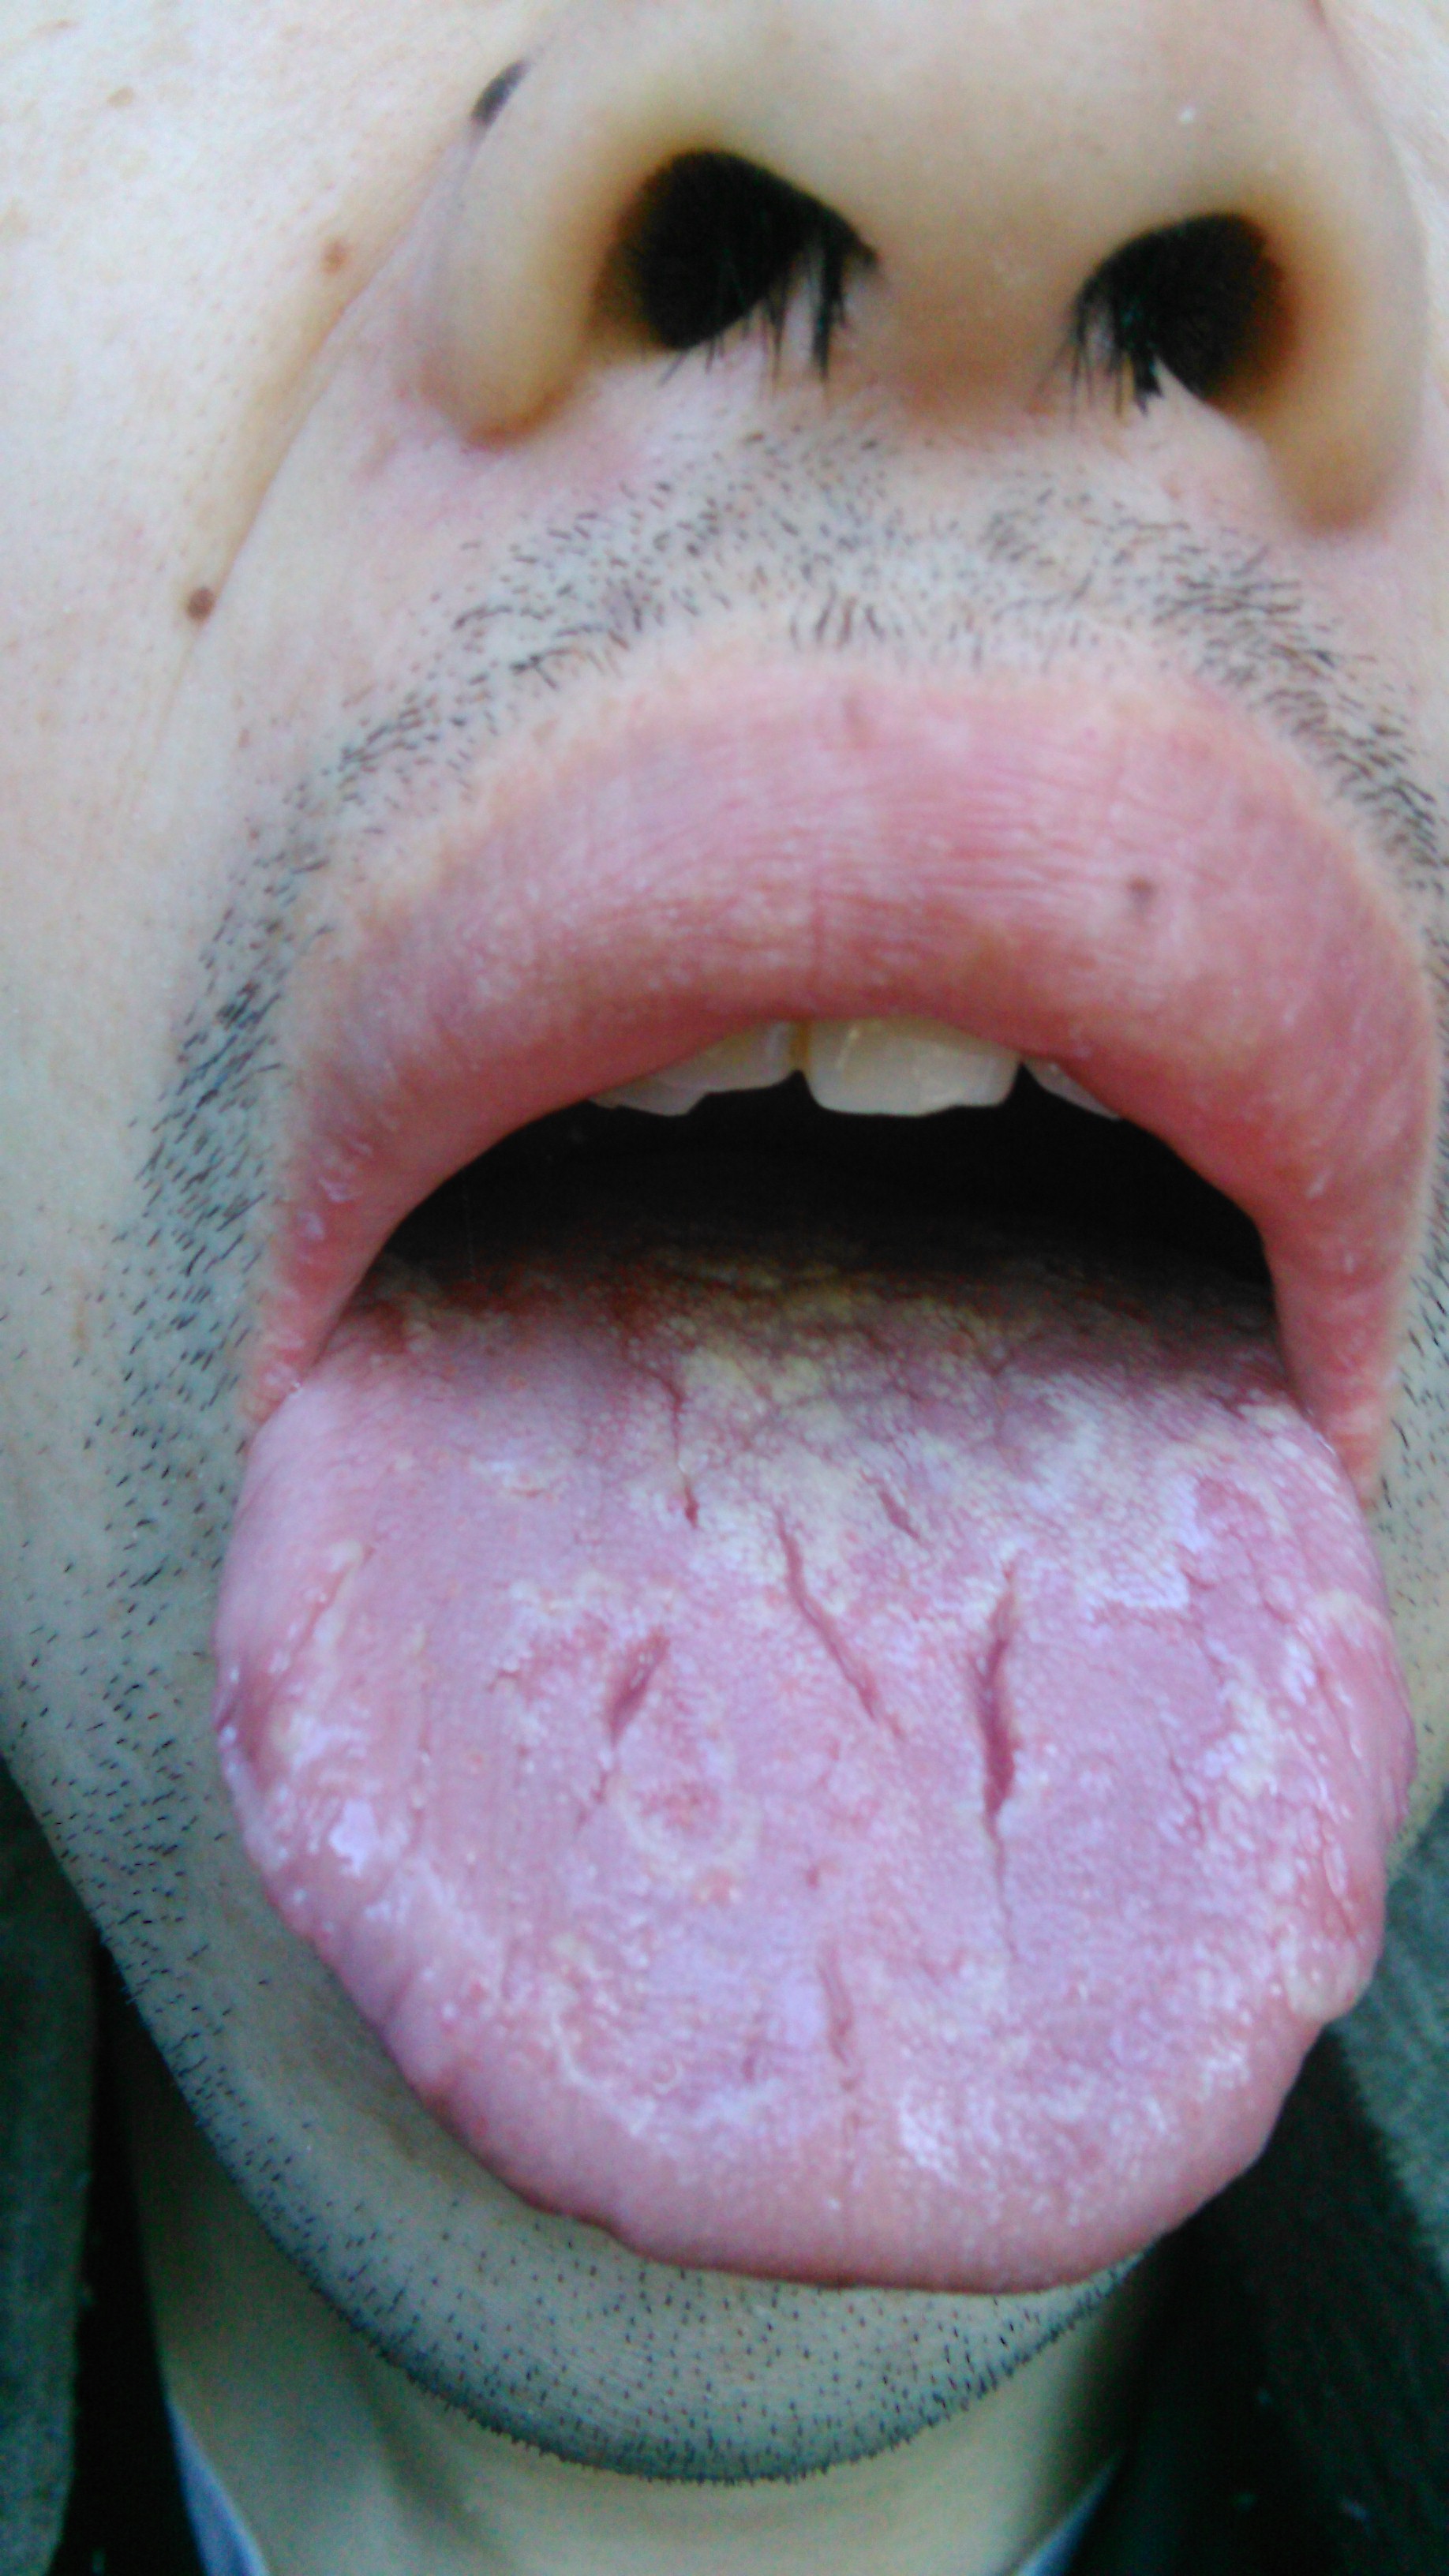 舌苔青紫色的图片图片